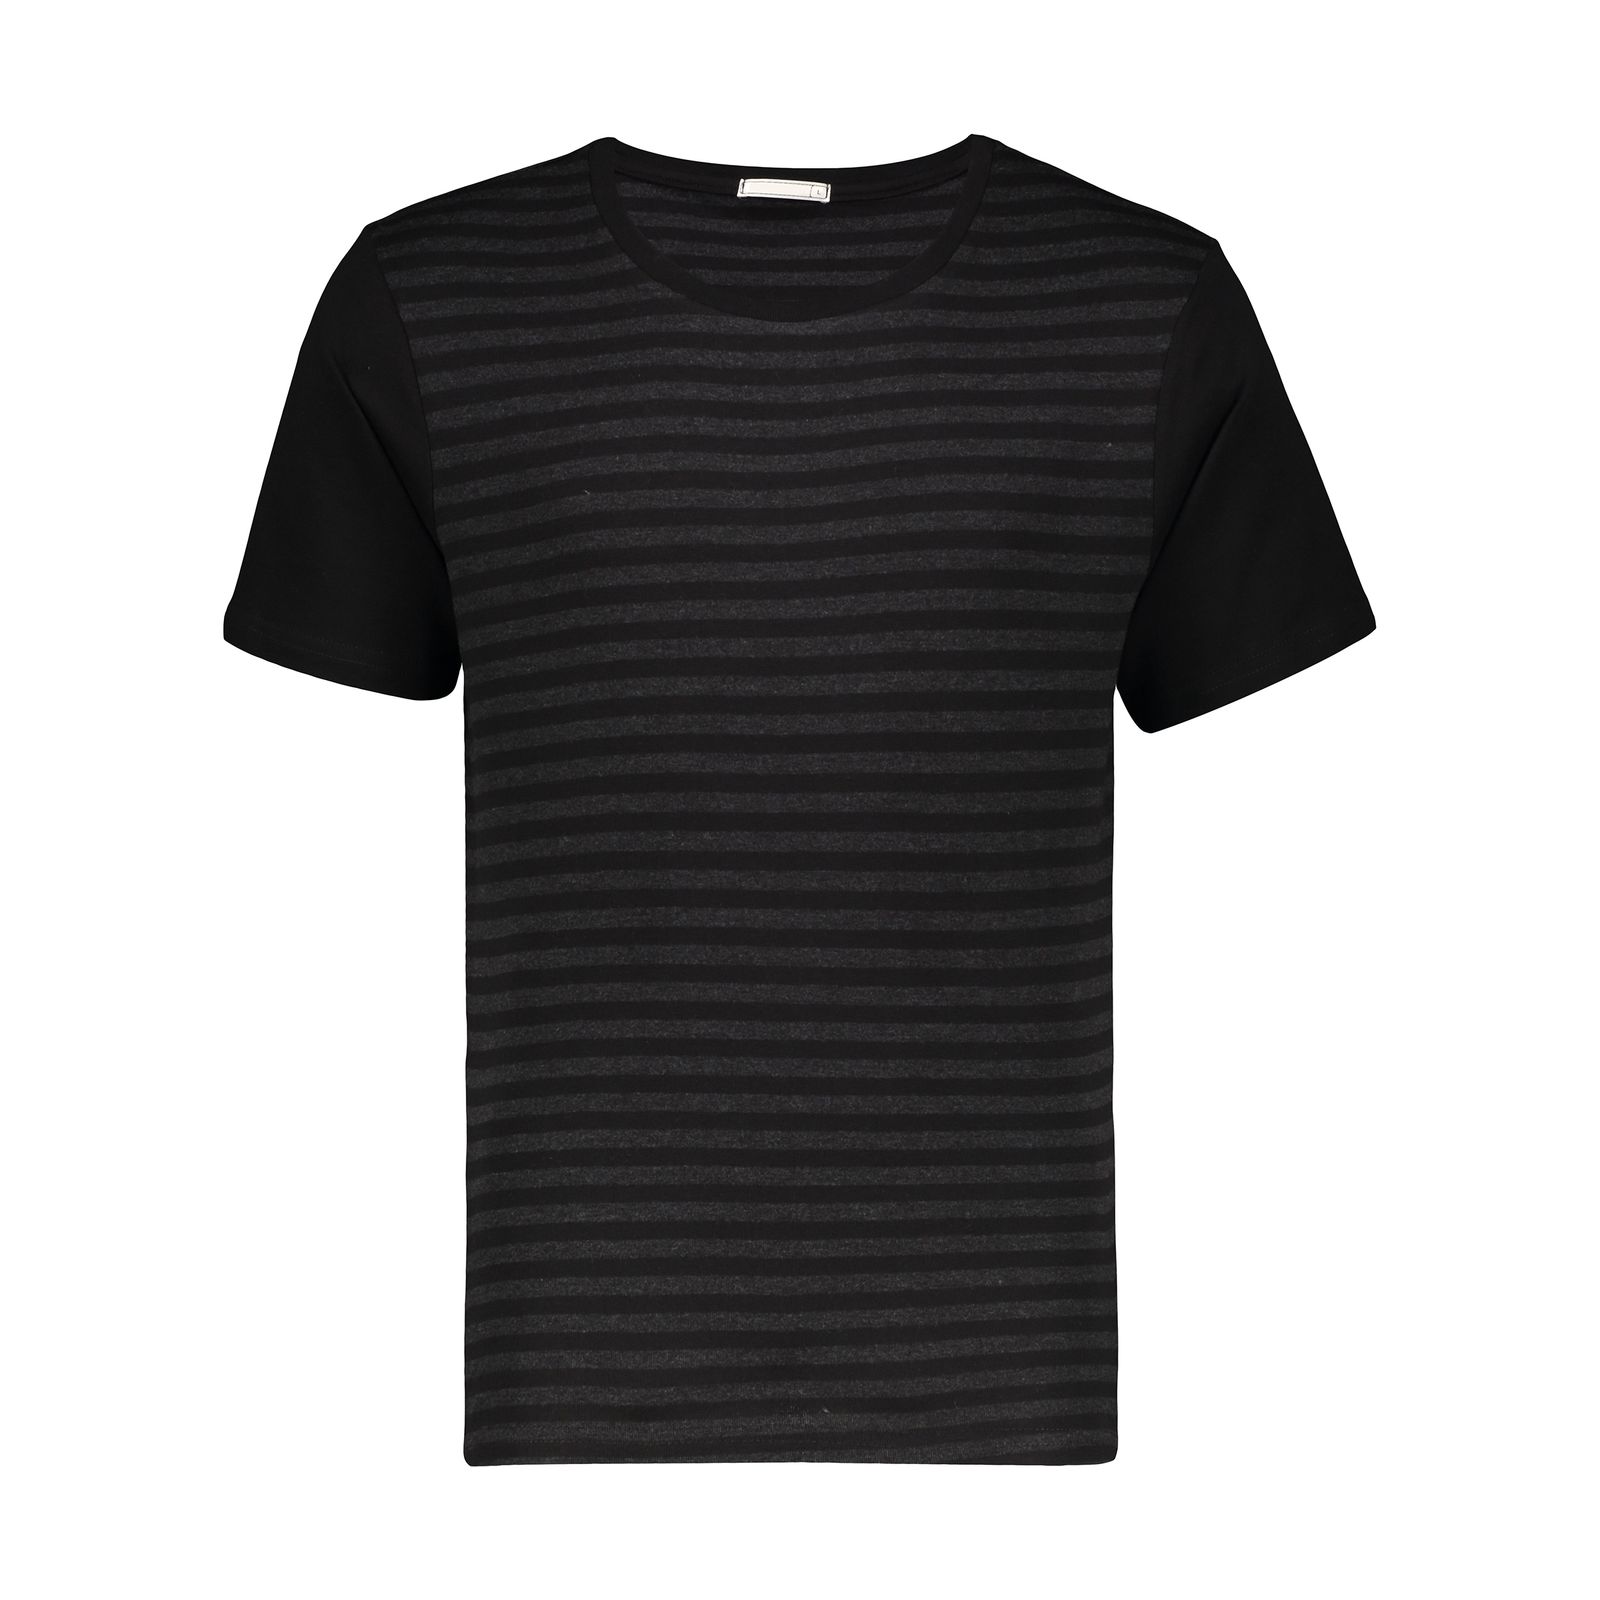 تی شرت آستین کوتاه مردانه دیجی استایل اسنشیال مدل 249112399 -  - 5